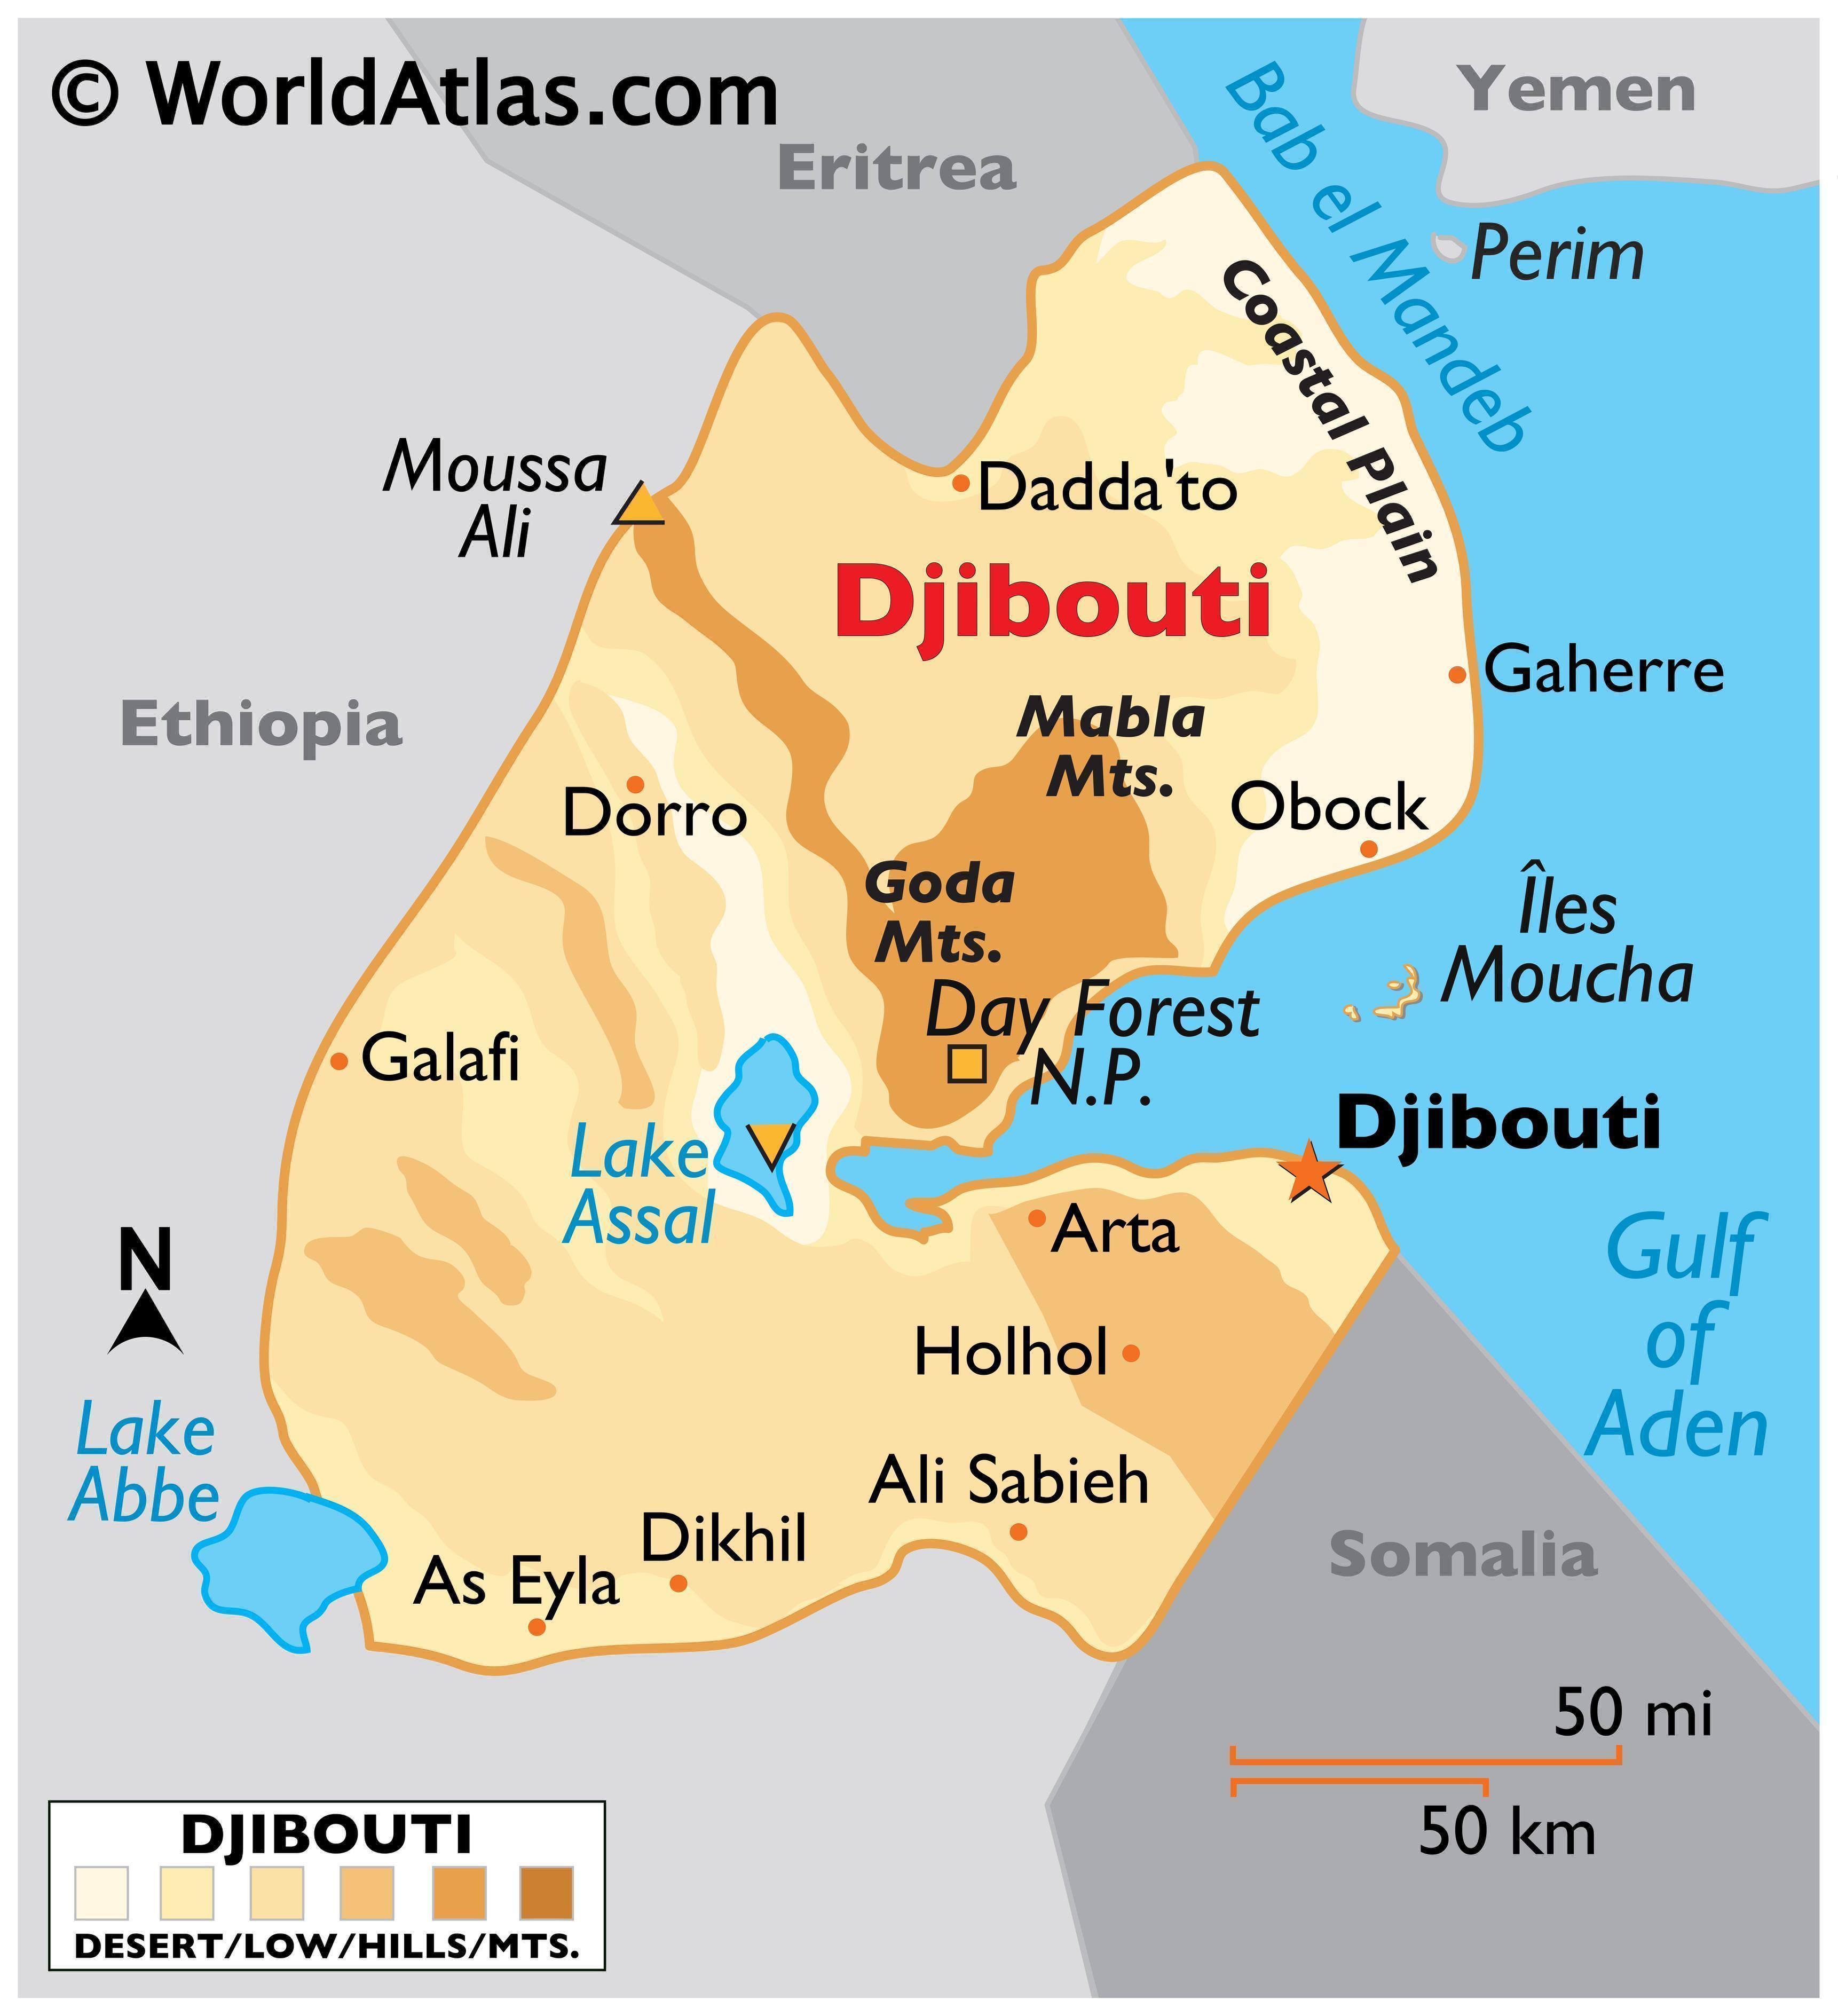 djibouti on a map Djibouti Map Geography Of Djibouti Map Of Djibouti djibouti on a map